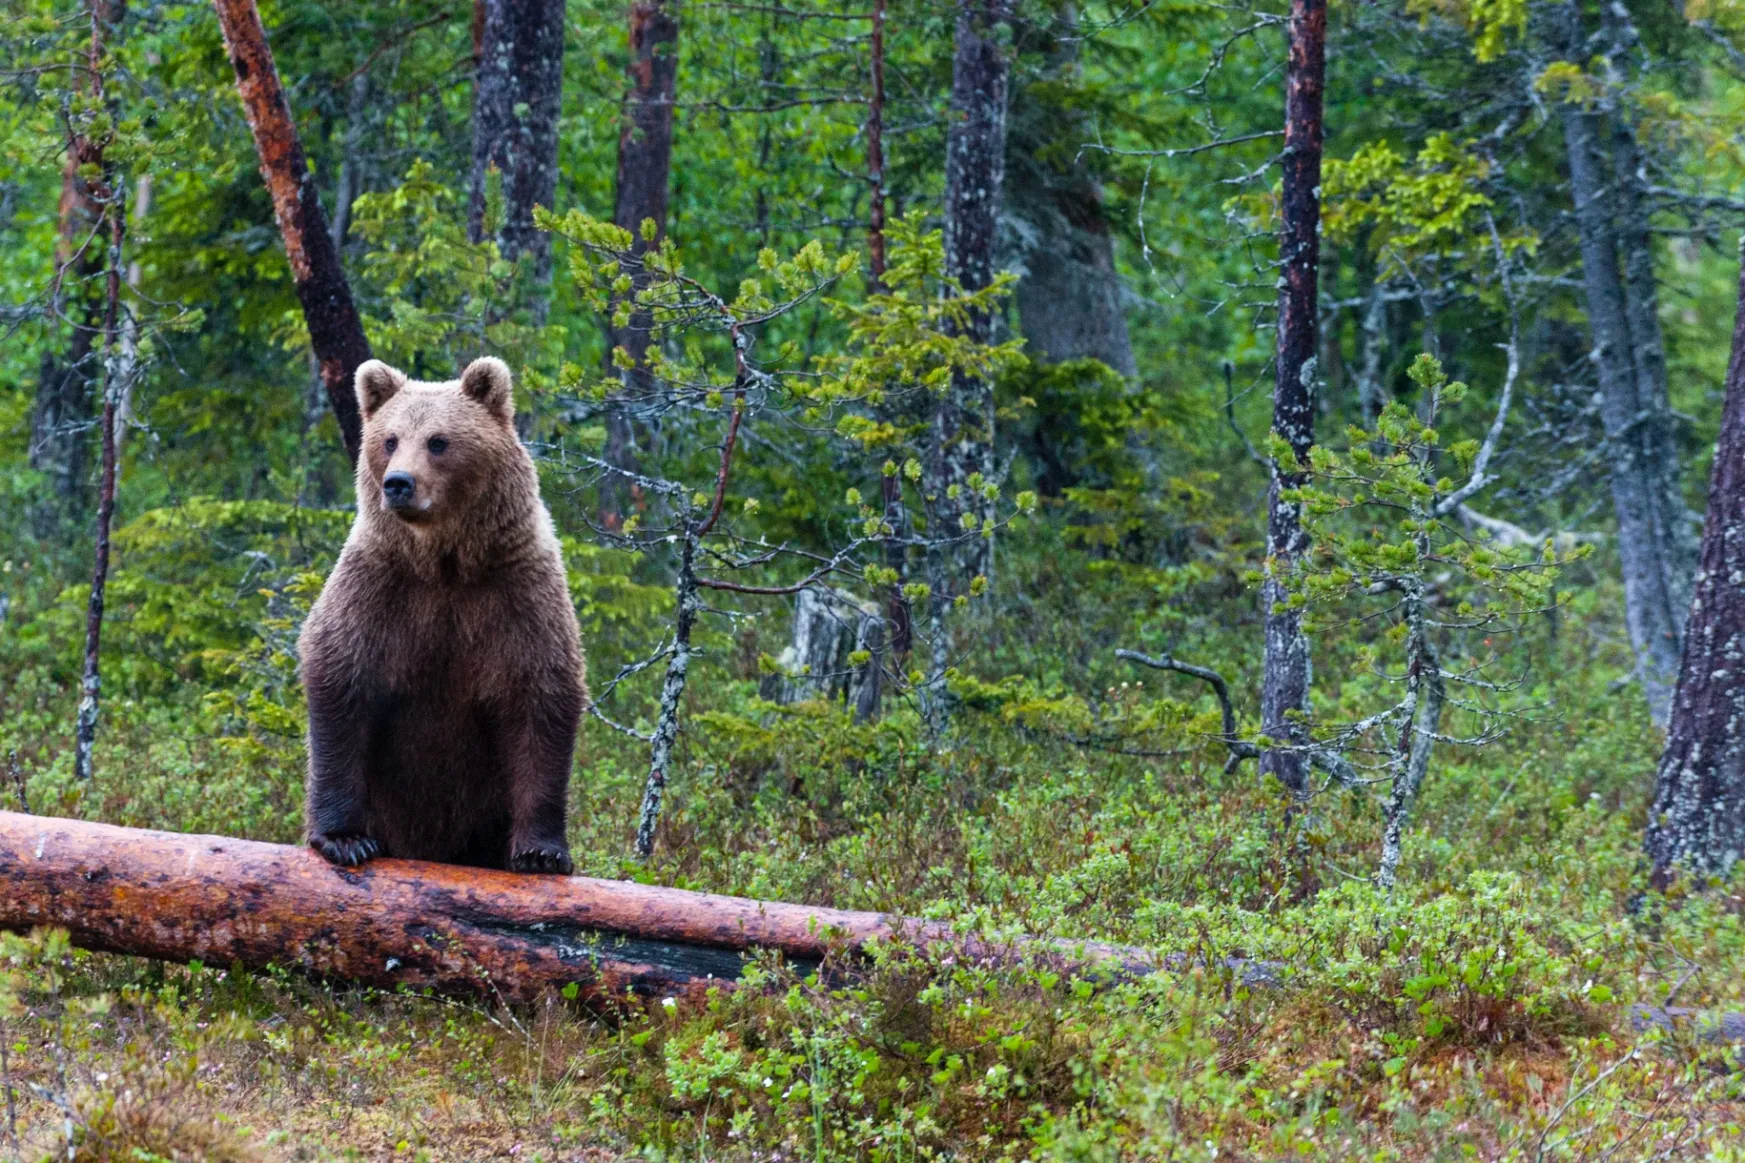 Tusnádfürdőn próbálja ki a medvék és emberek békés együttélését célzó projektjét a WWF